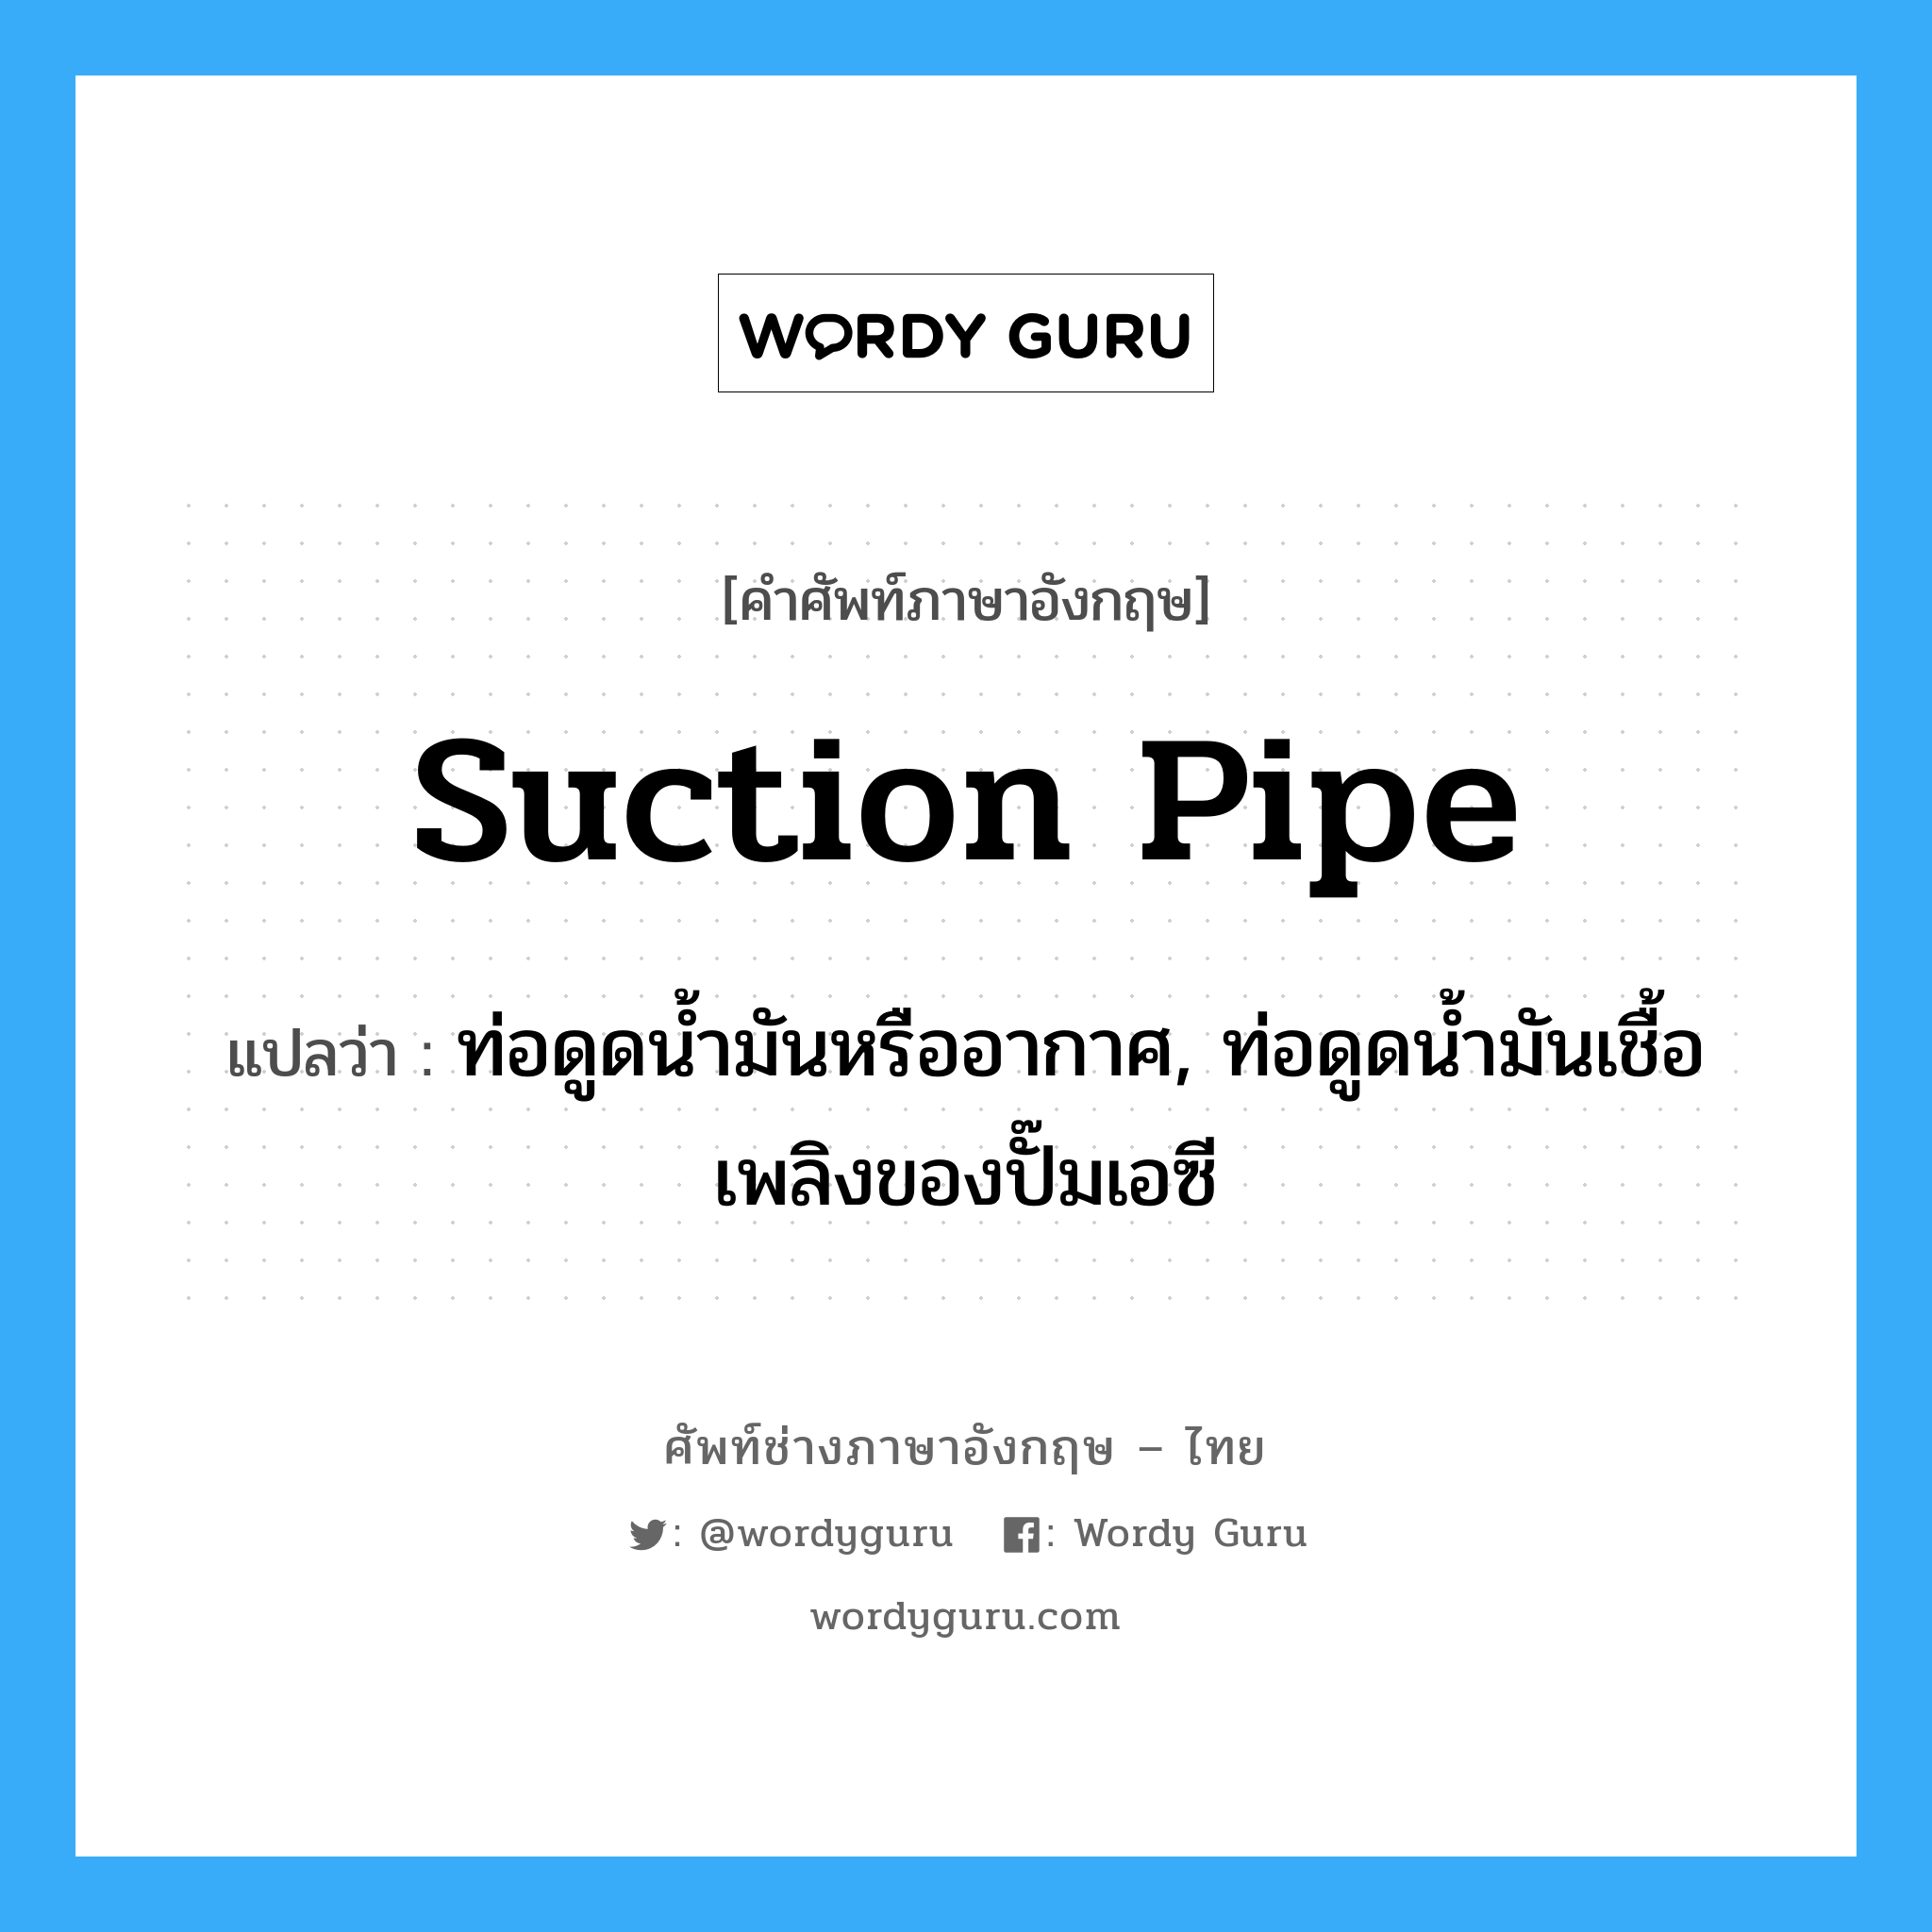 suction-pipe แปลว่า?, คำศัพท์ช่างภาษาอังกฤษ - ไทย suction pipe คำศัพท์ภาษาอังกฤษ suction pipe แปลว่า ท่อดูดน้ำมันหรืออากาศ, ท่อดูดน้ำมันเชื้อเพลิงของปั๊มเอซี